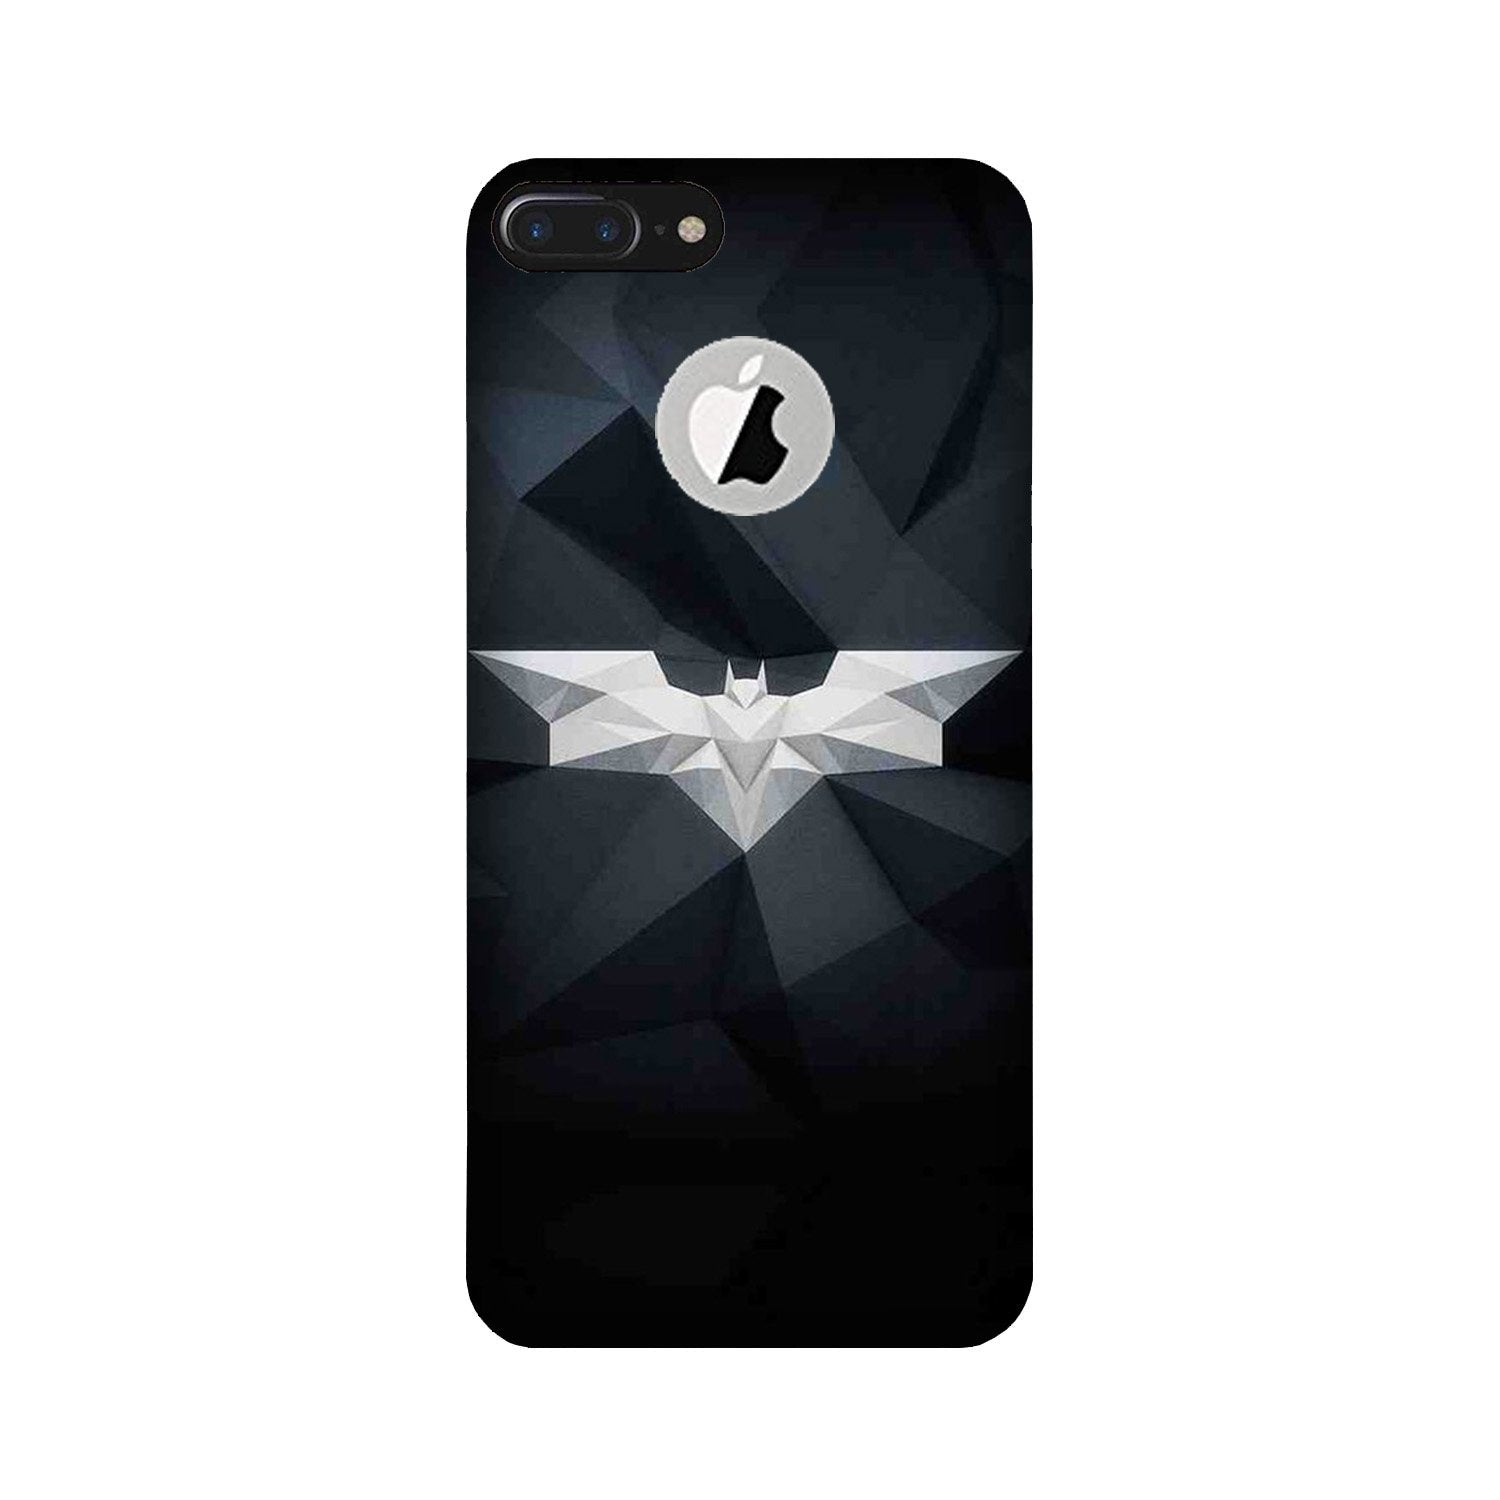 Batman Case for iPhone 7 Plus logo cut